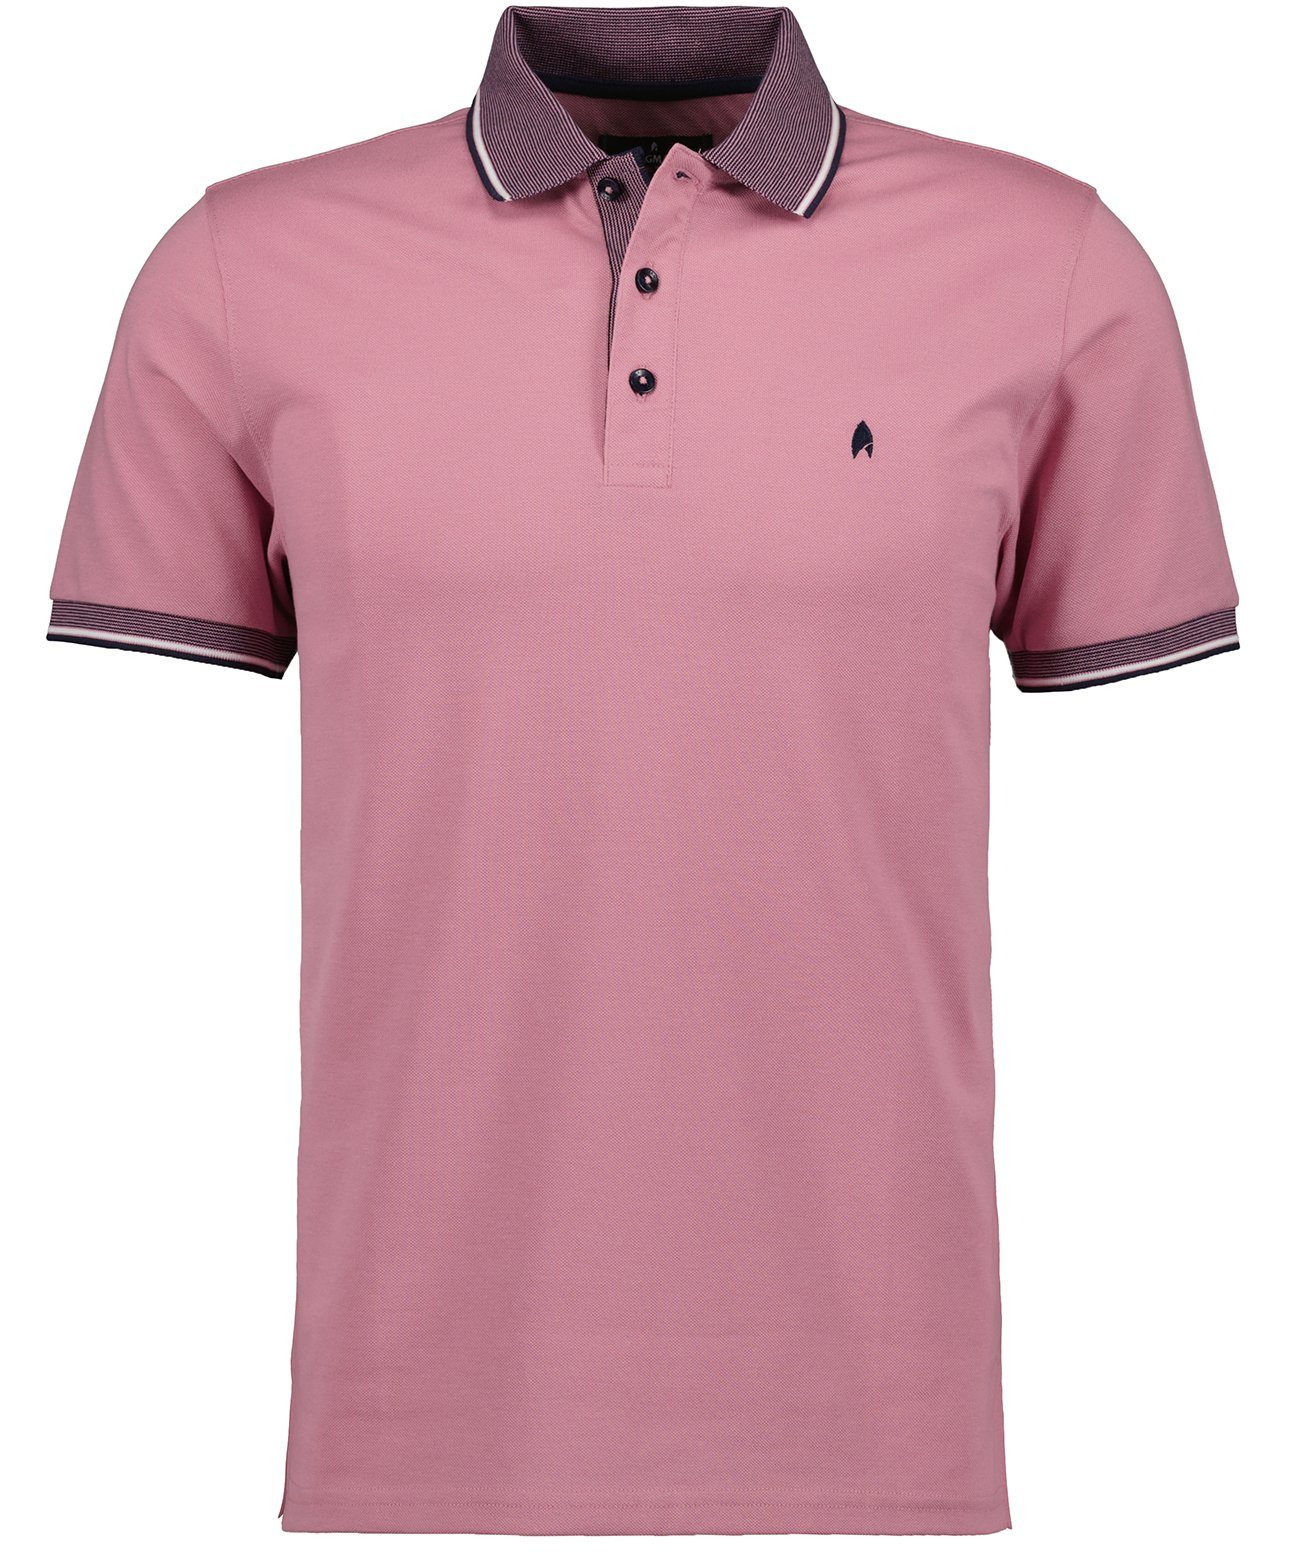 RAGMAN Poloshirt Pink-641 | Poloshirts